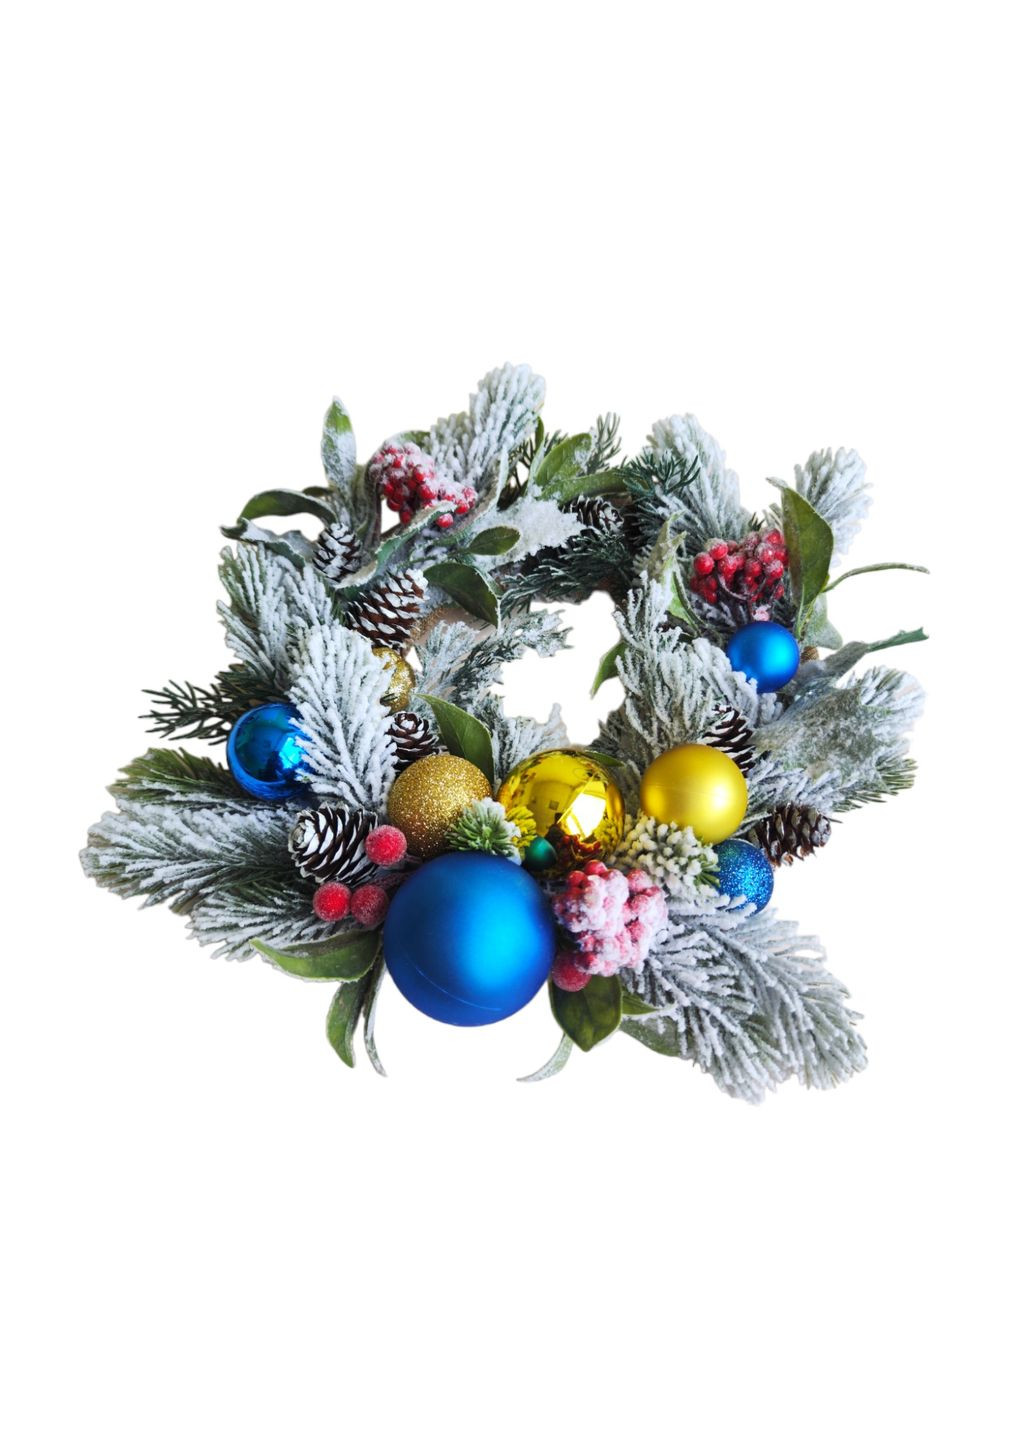 Рождественский декор, заснеженная елка. Набор венок и подсвечник желто-голубого цвета Ksenija Vitali (263063883)